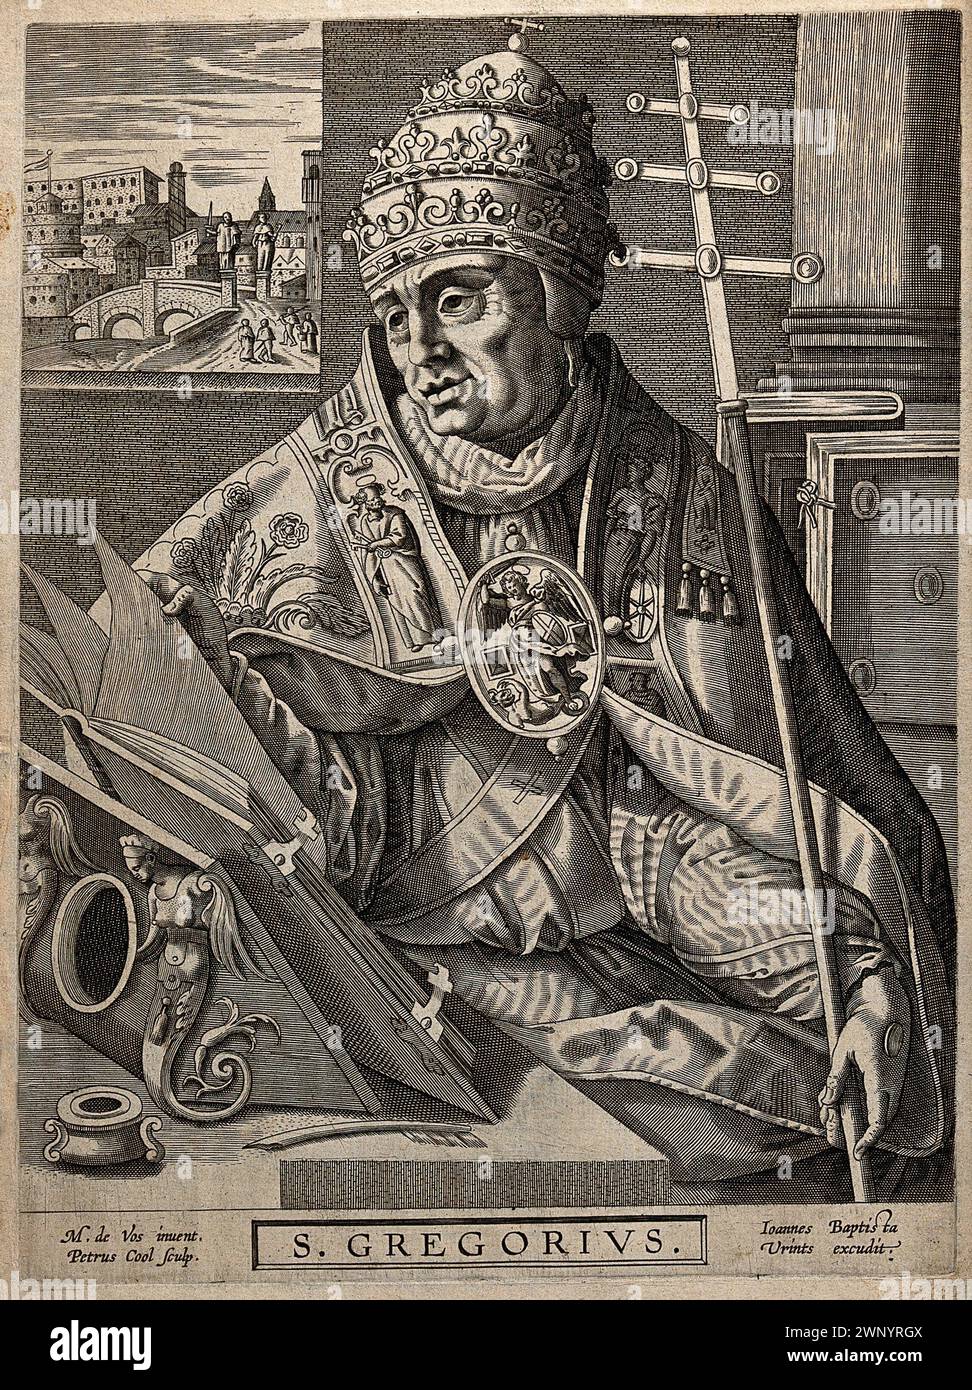 Ein Kupferstich von Papst Gregor I. (auch bekannt als Heiliger Gregor der große) aus dem Jahr 1600, der von 590 bis 604 n. Chr. Pontiff war. Er war der 64. Papst. Er war es, der den Gesang des Chors einführte, der als Gregorianischer Chant bekannt ist. Auf diesem Bild ist er als Leser heiliger Werke dargestellt, während eine Taube, die den Himmel repräsentiert, ihn mit Licht beleuchtet. Stockfoto